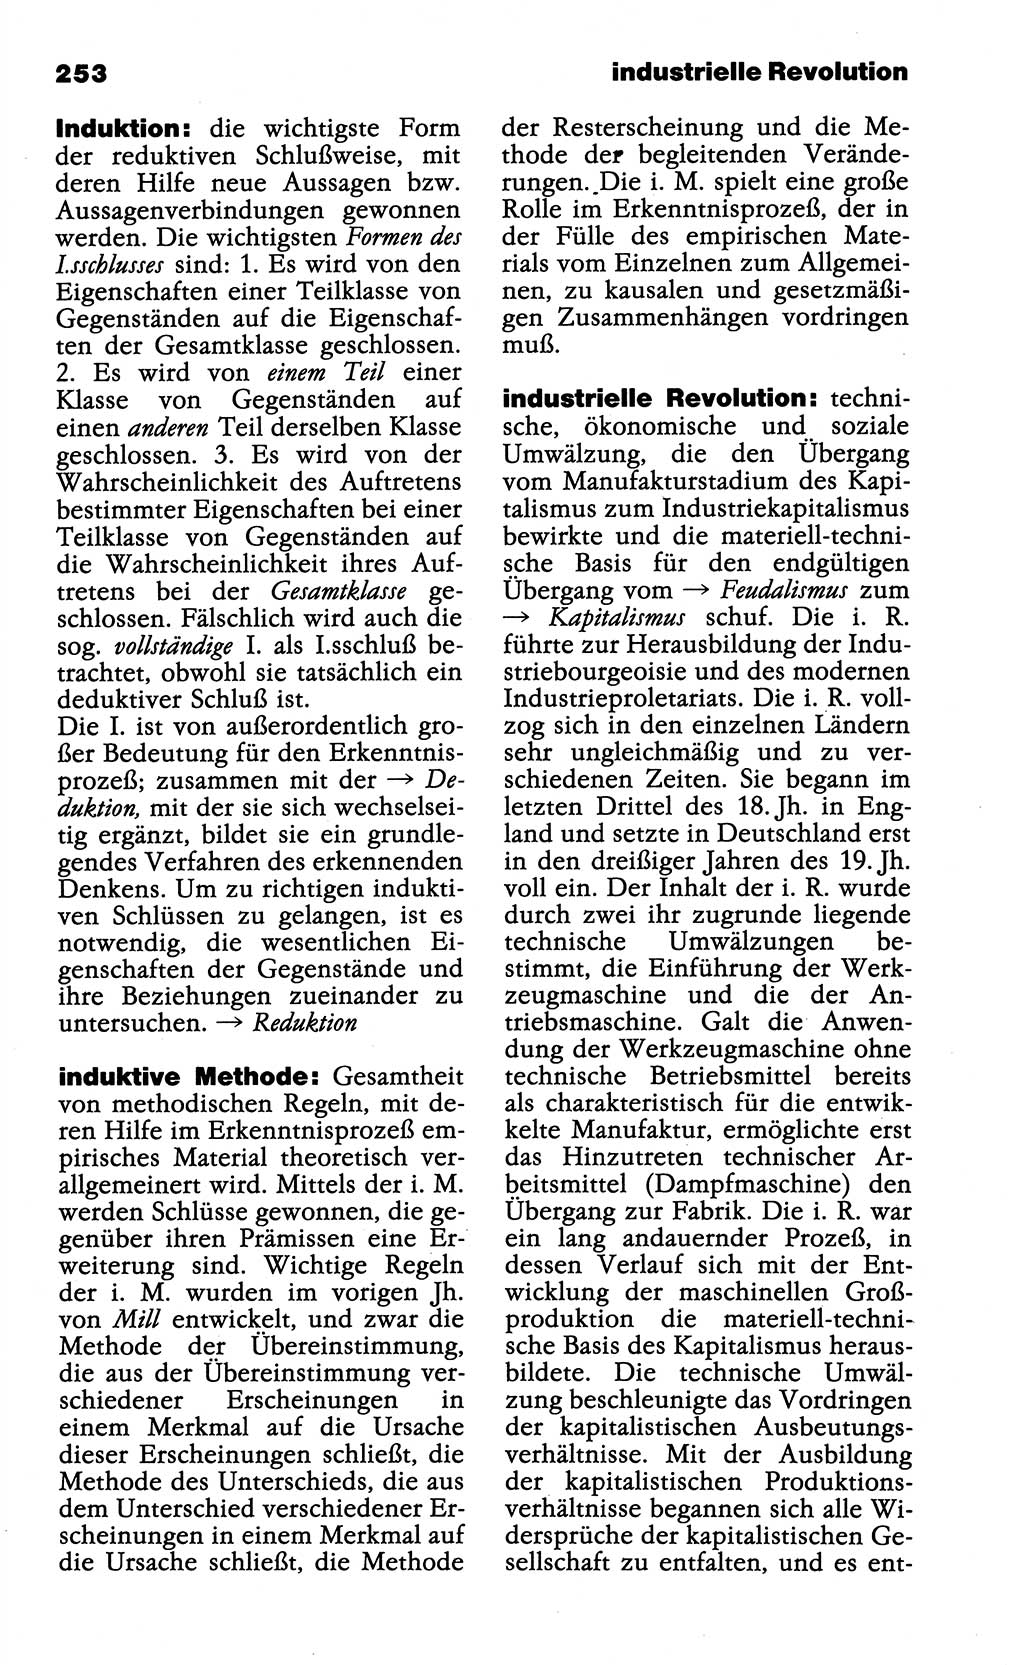 Wörterbuch der marxistisch-leninistischen Philosophie [Deutsche Demokratische Republik (DDR)] 1985, Seite 253 (Wb. ML Phil. DDR 1985, S. 253)